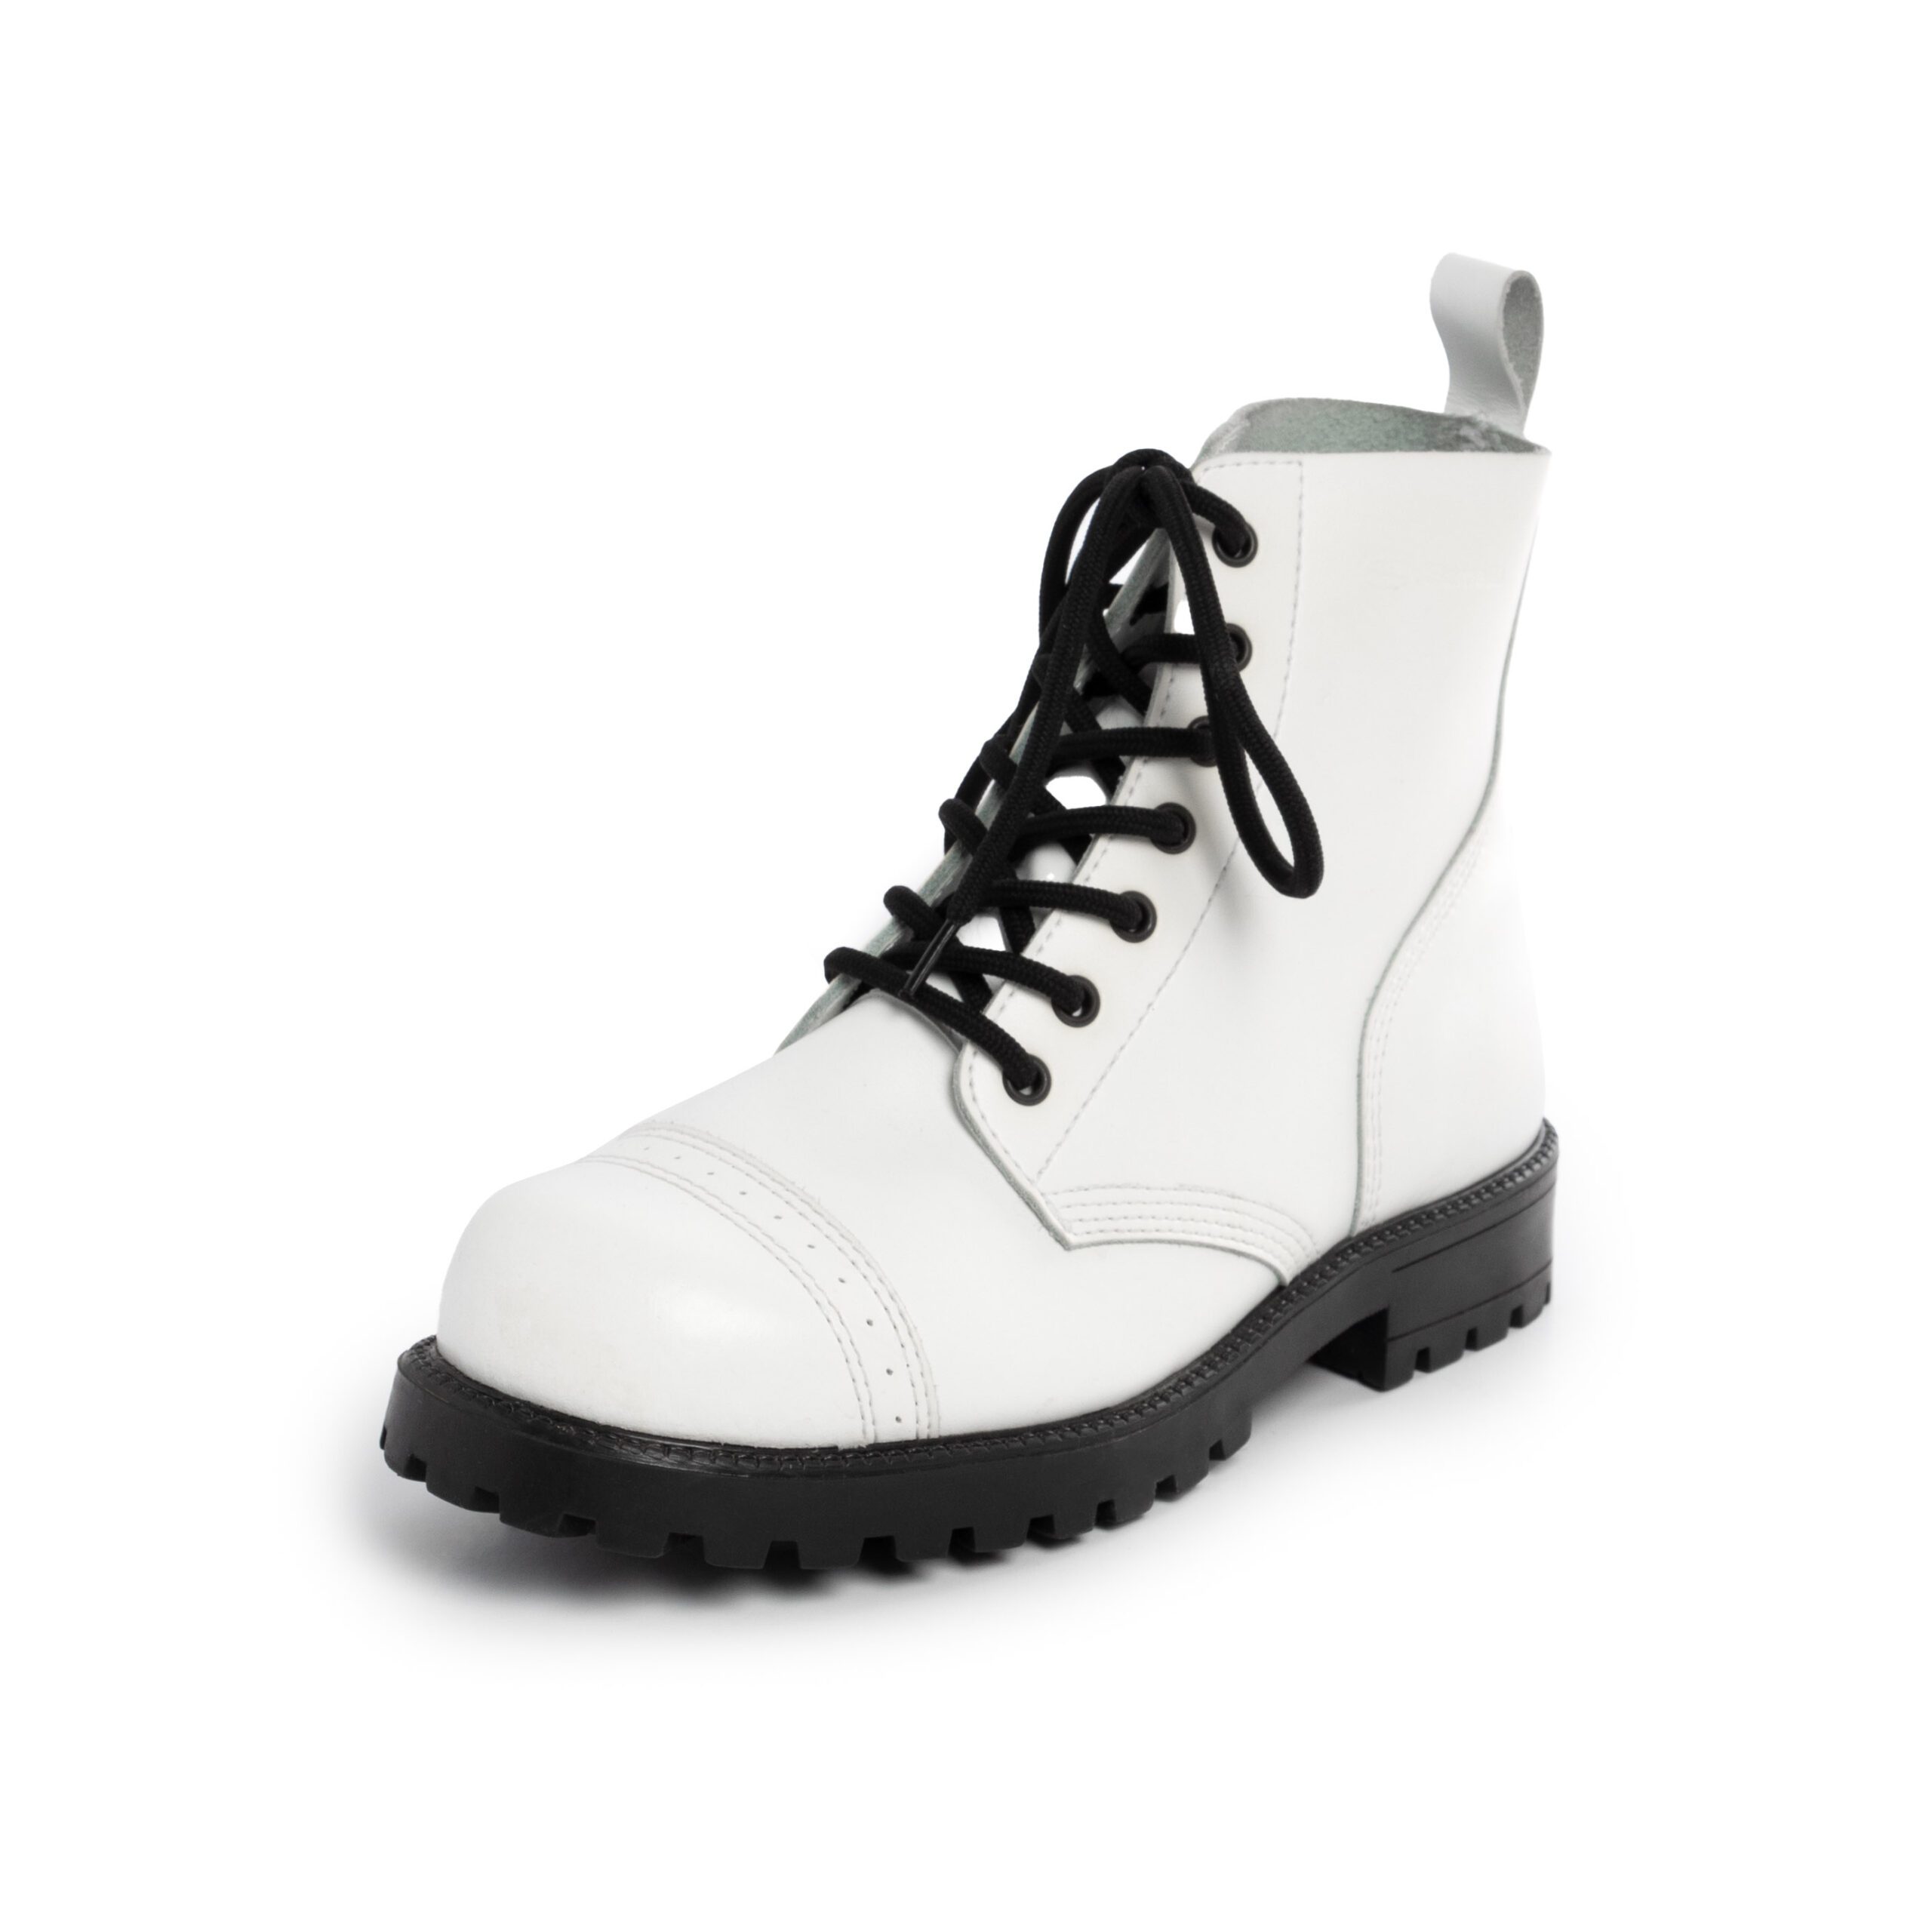 Samelin White ankle boots - Tallinn Design House